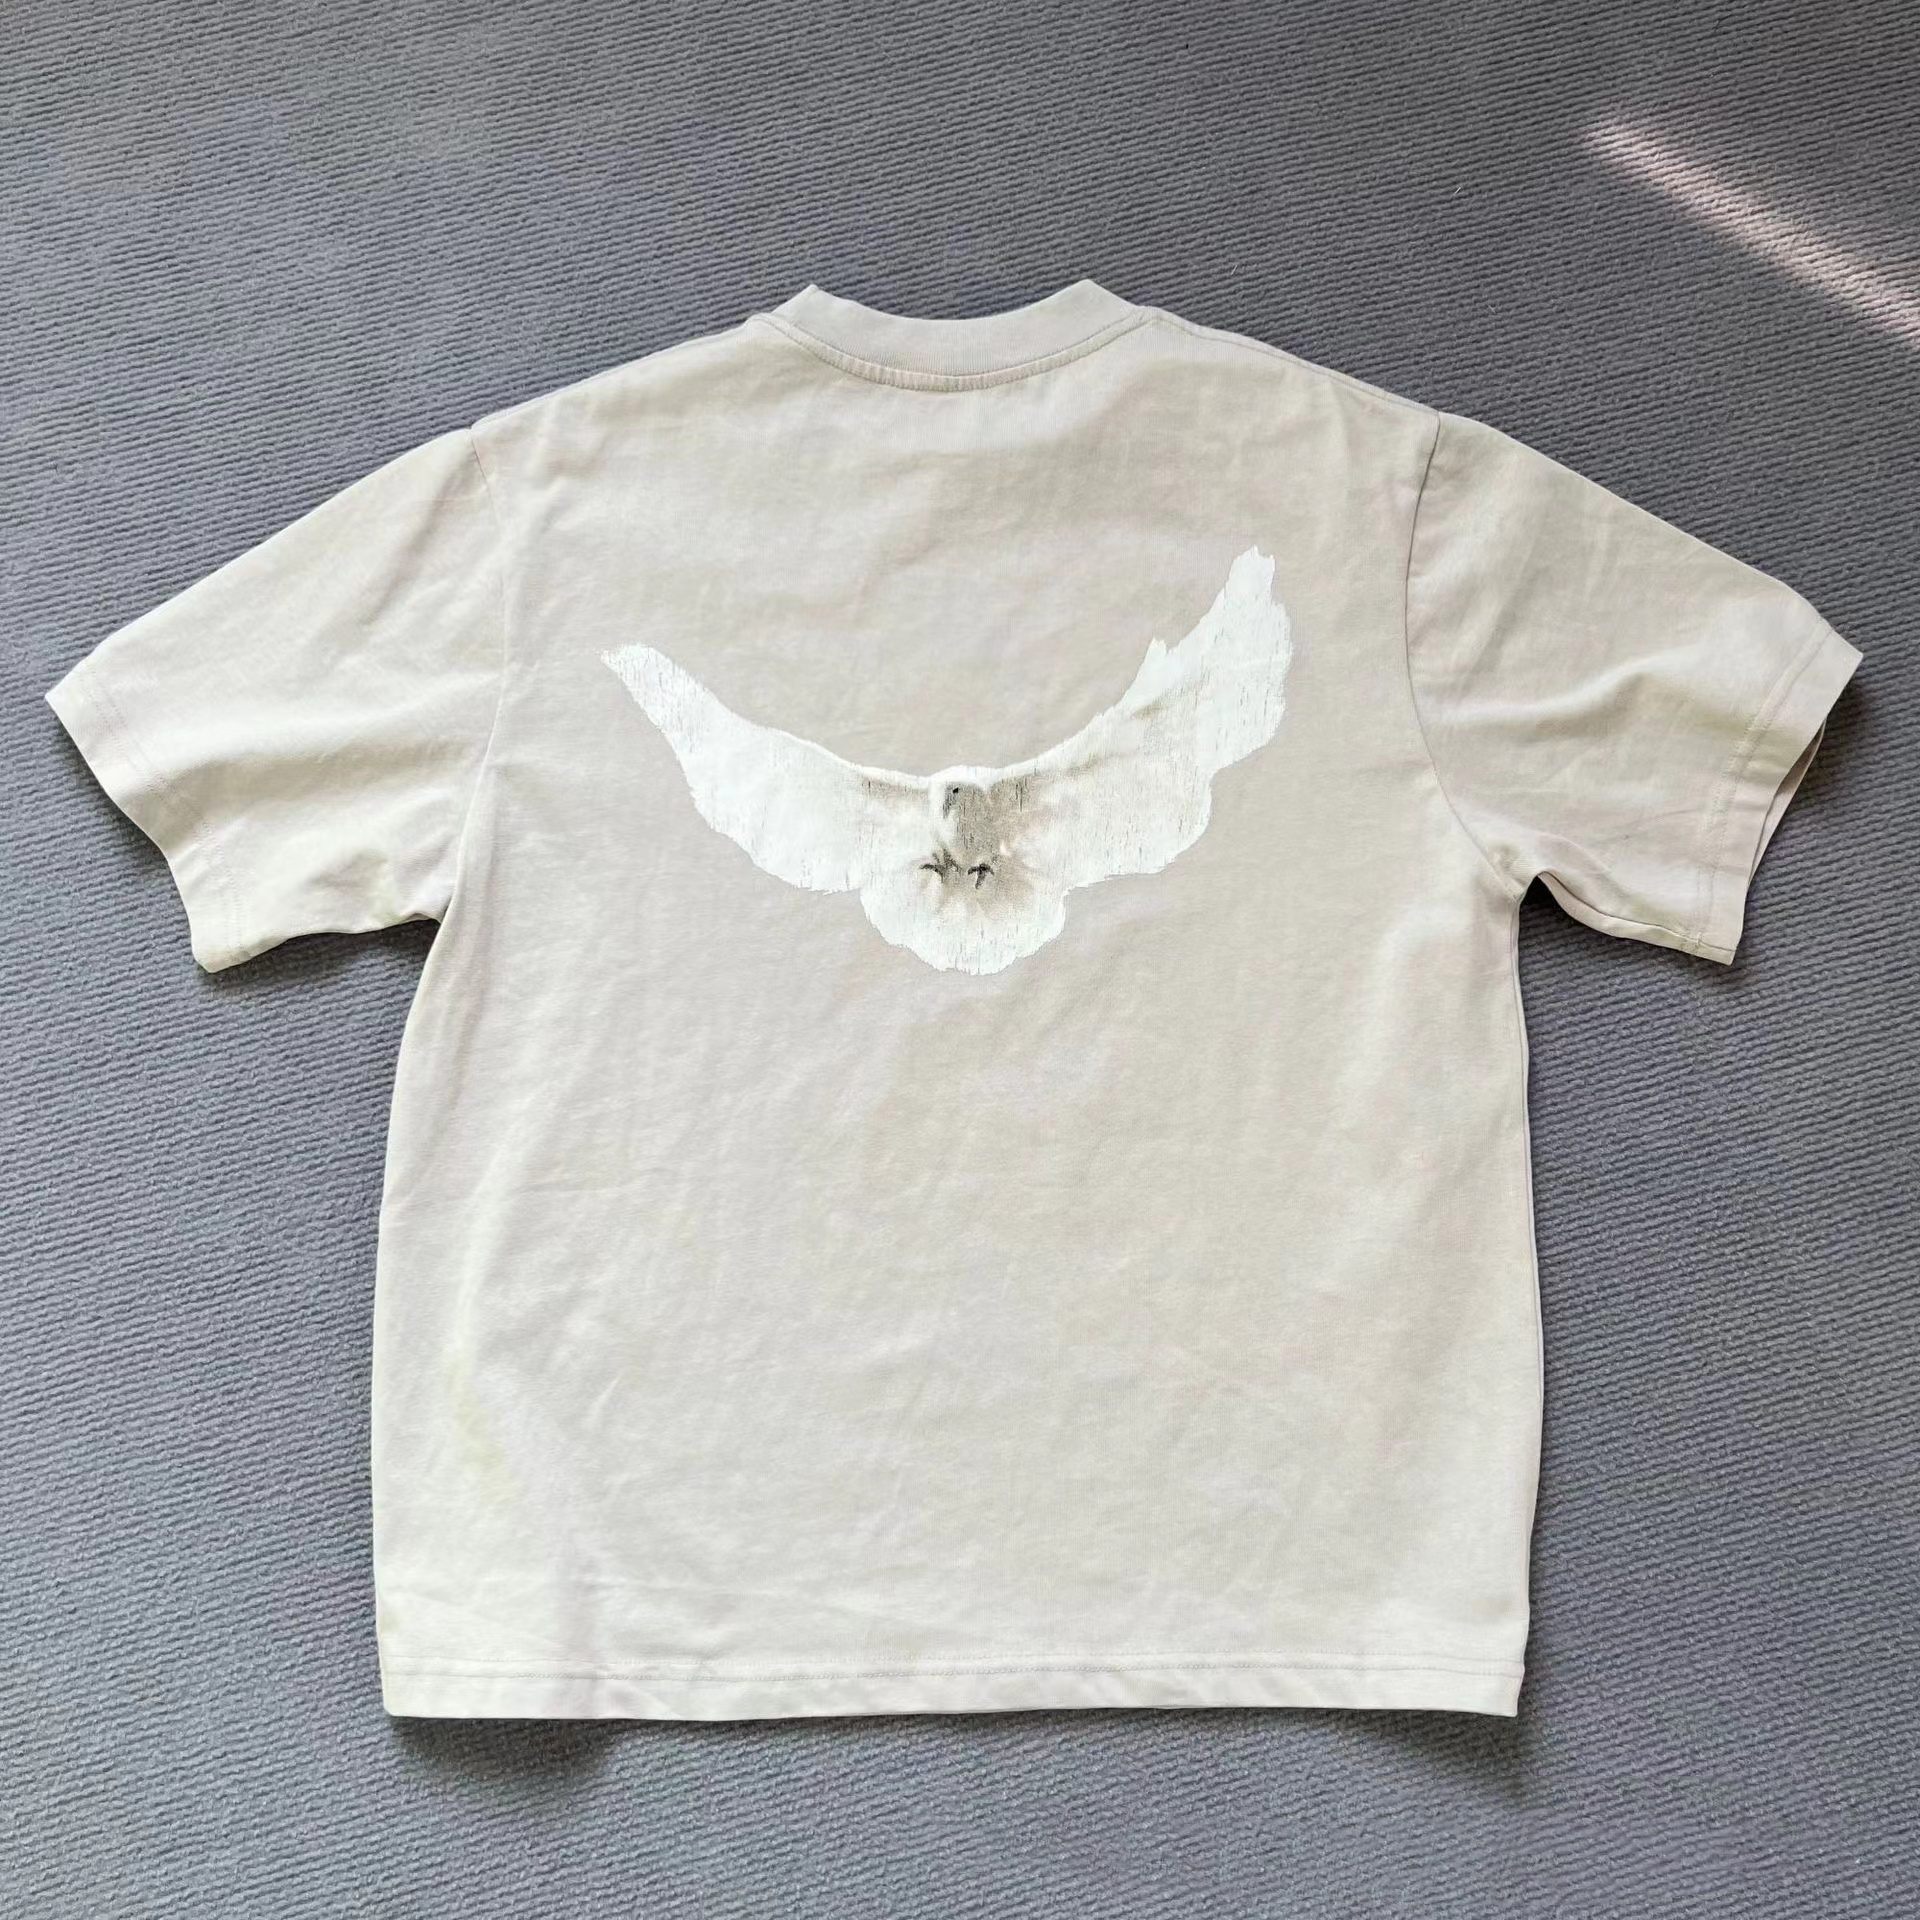 Erkek Tasarımcı T Shirt Tshirt Tasarı Gömlek 260g Ağırlık Pamuklu Çift Erkek Kadın Unisex Güvercin Desen Toptan 2 Parçası% 5 İndirim